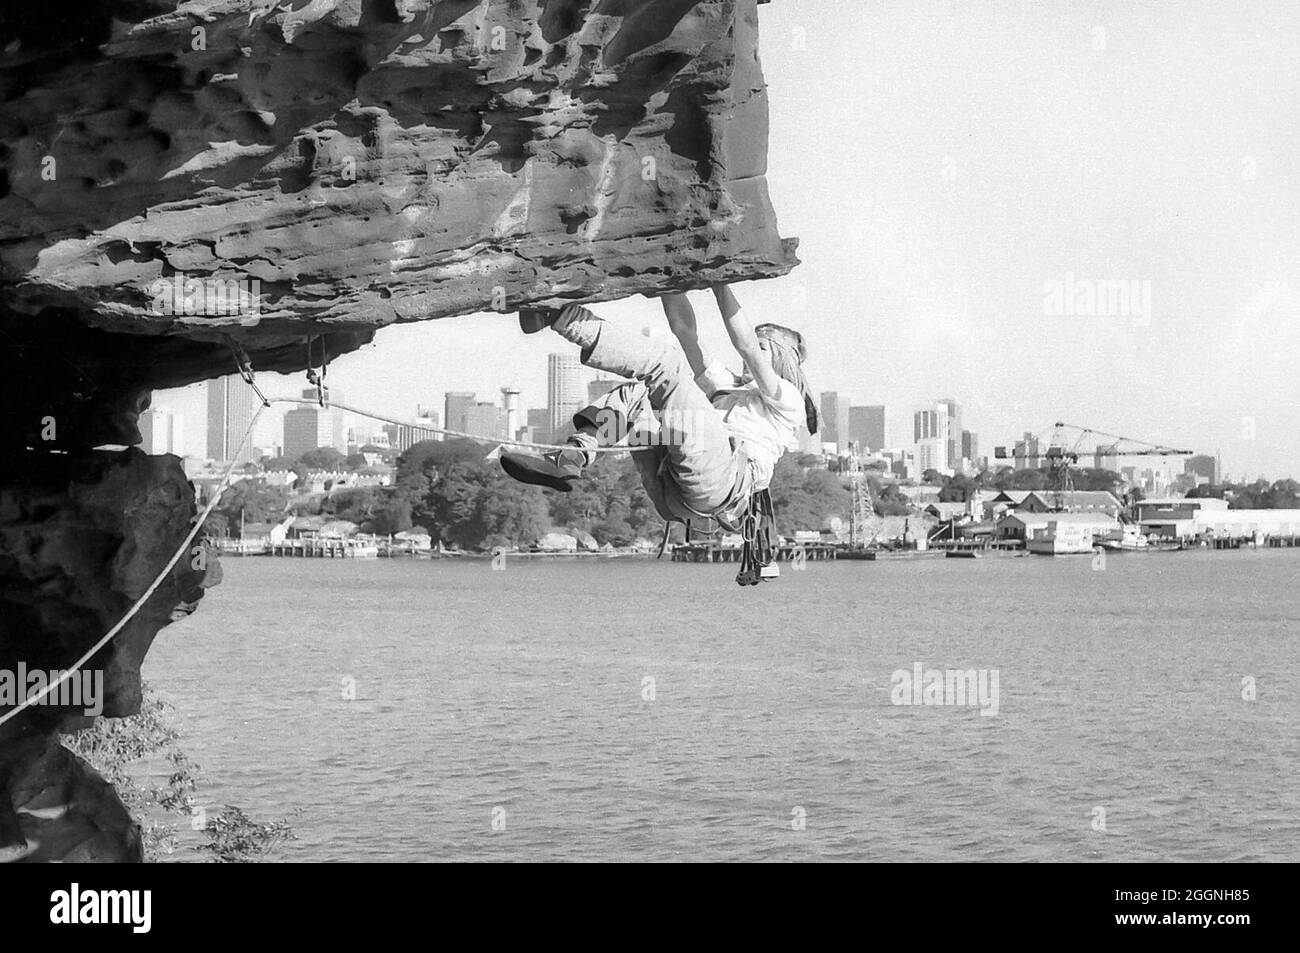 Ein Bild aus dem Jahr 1978 von einem Studenten aus dem Jahr 12, Warwick Baird, der eine Steigung am Balls Head Reserve bestieg, mit Goat Island und der Innenstadt von Sydney im Hintergrund. Beachten Sie die nicht überlaufene Skyline der Stadt im Vergleich zu heute. Klettern jeglicher Art innerhalb des Reservats ist seit 1996 verboten Stockfoto